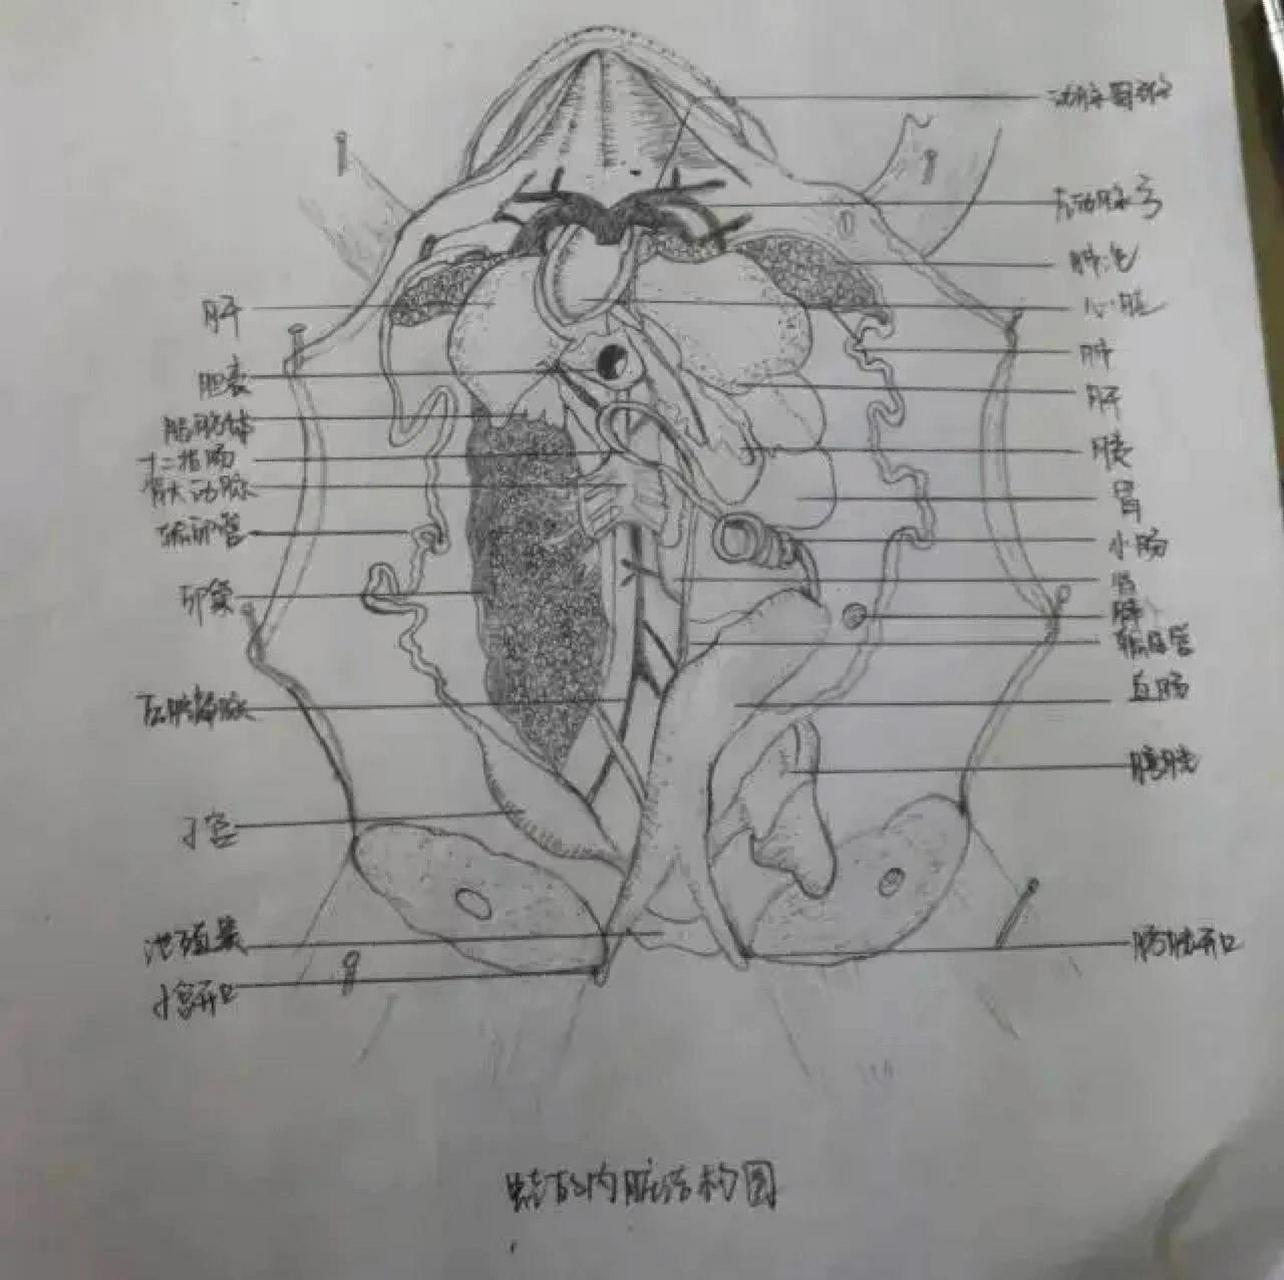 青蛙内脏解剖手绘图图片